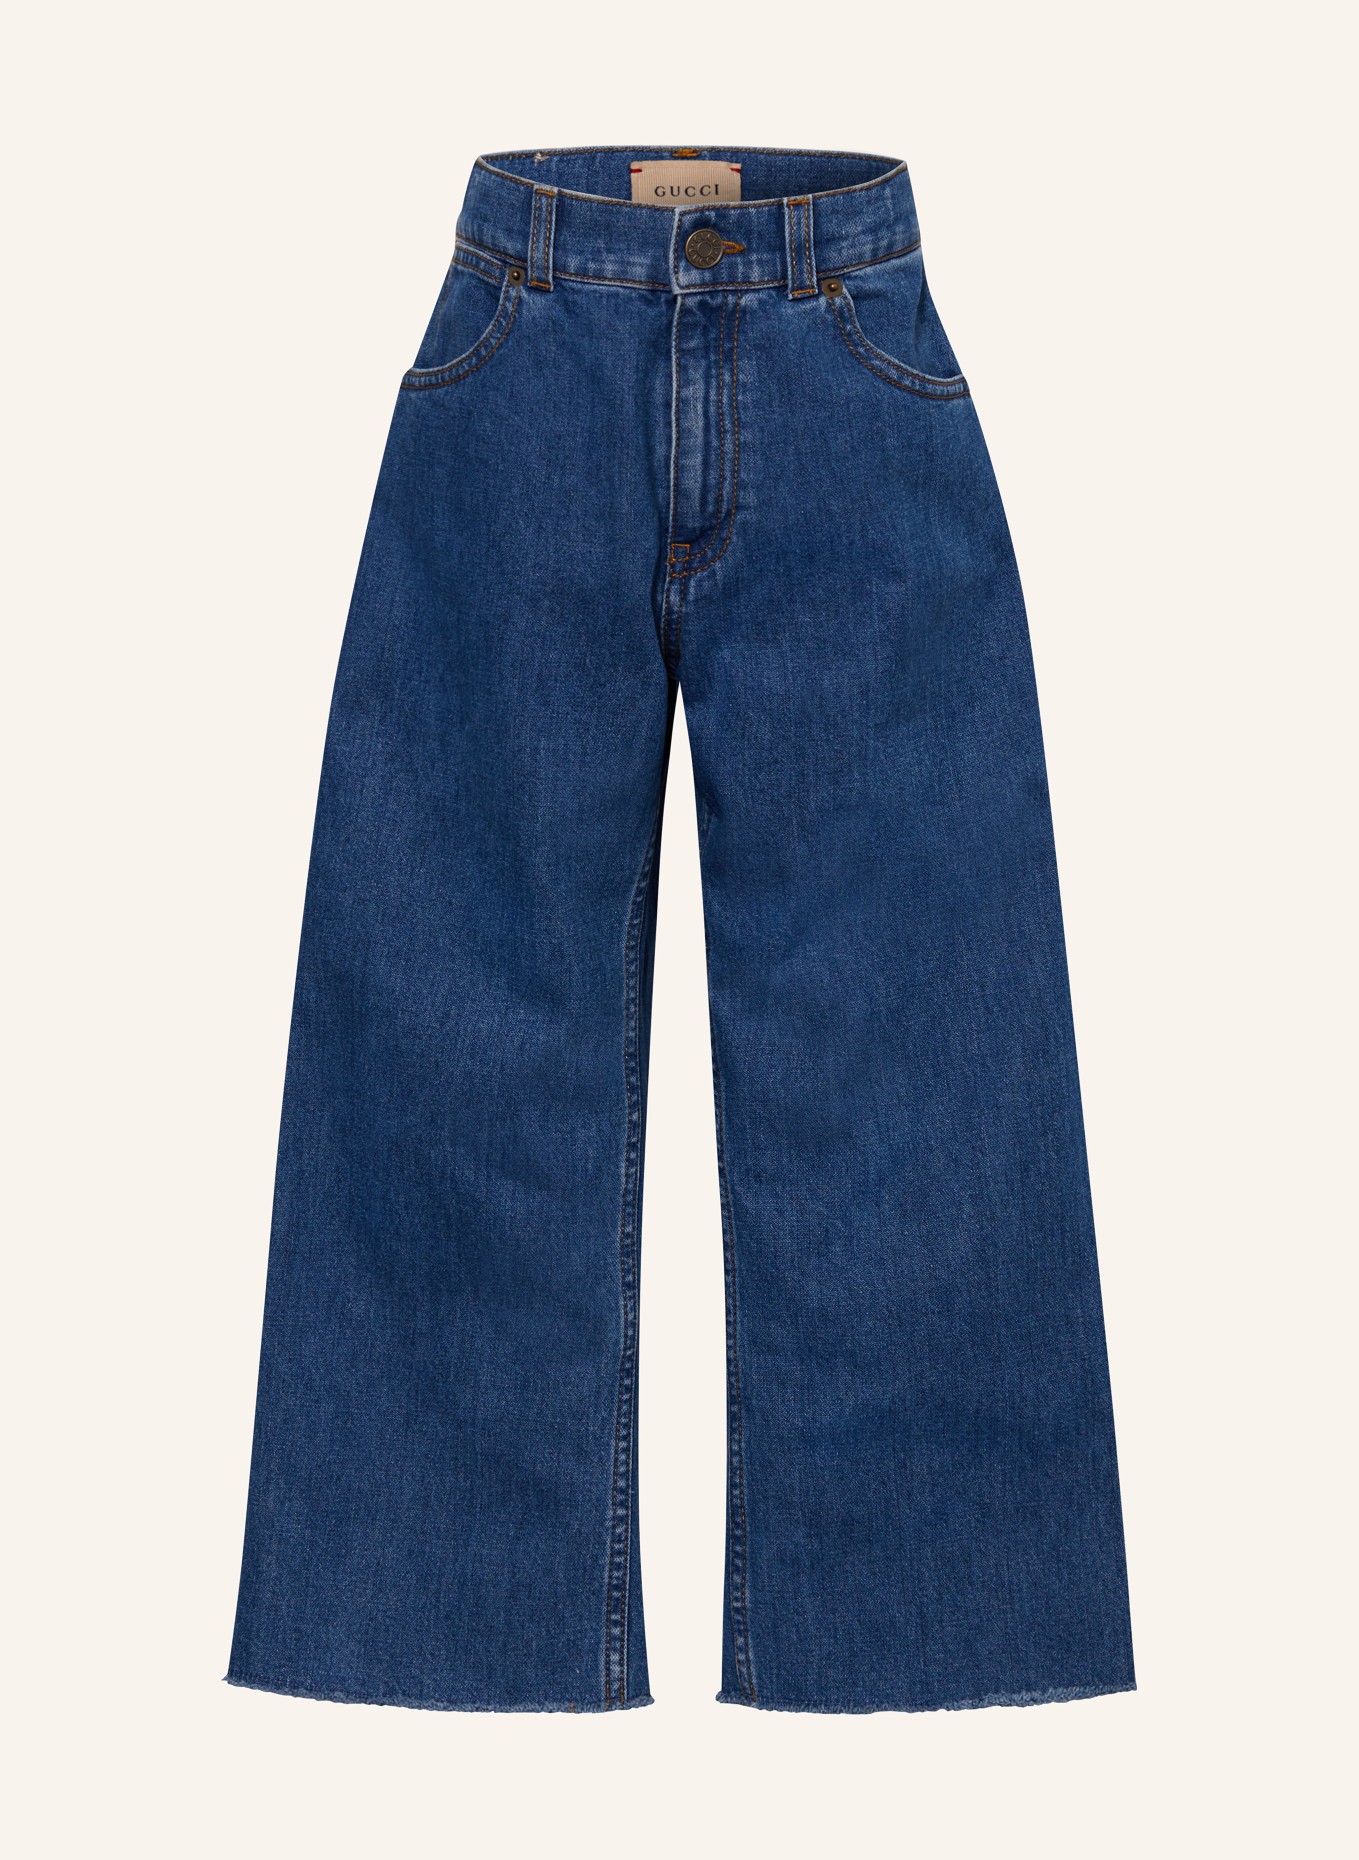 GUCCI Jeans, Farbe: BLAU (Bild 1)